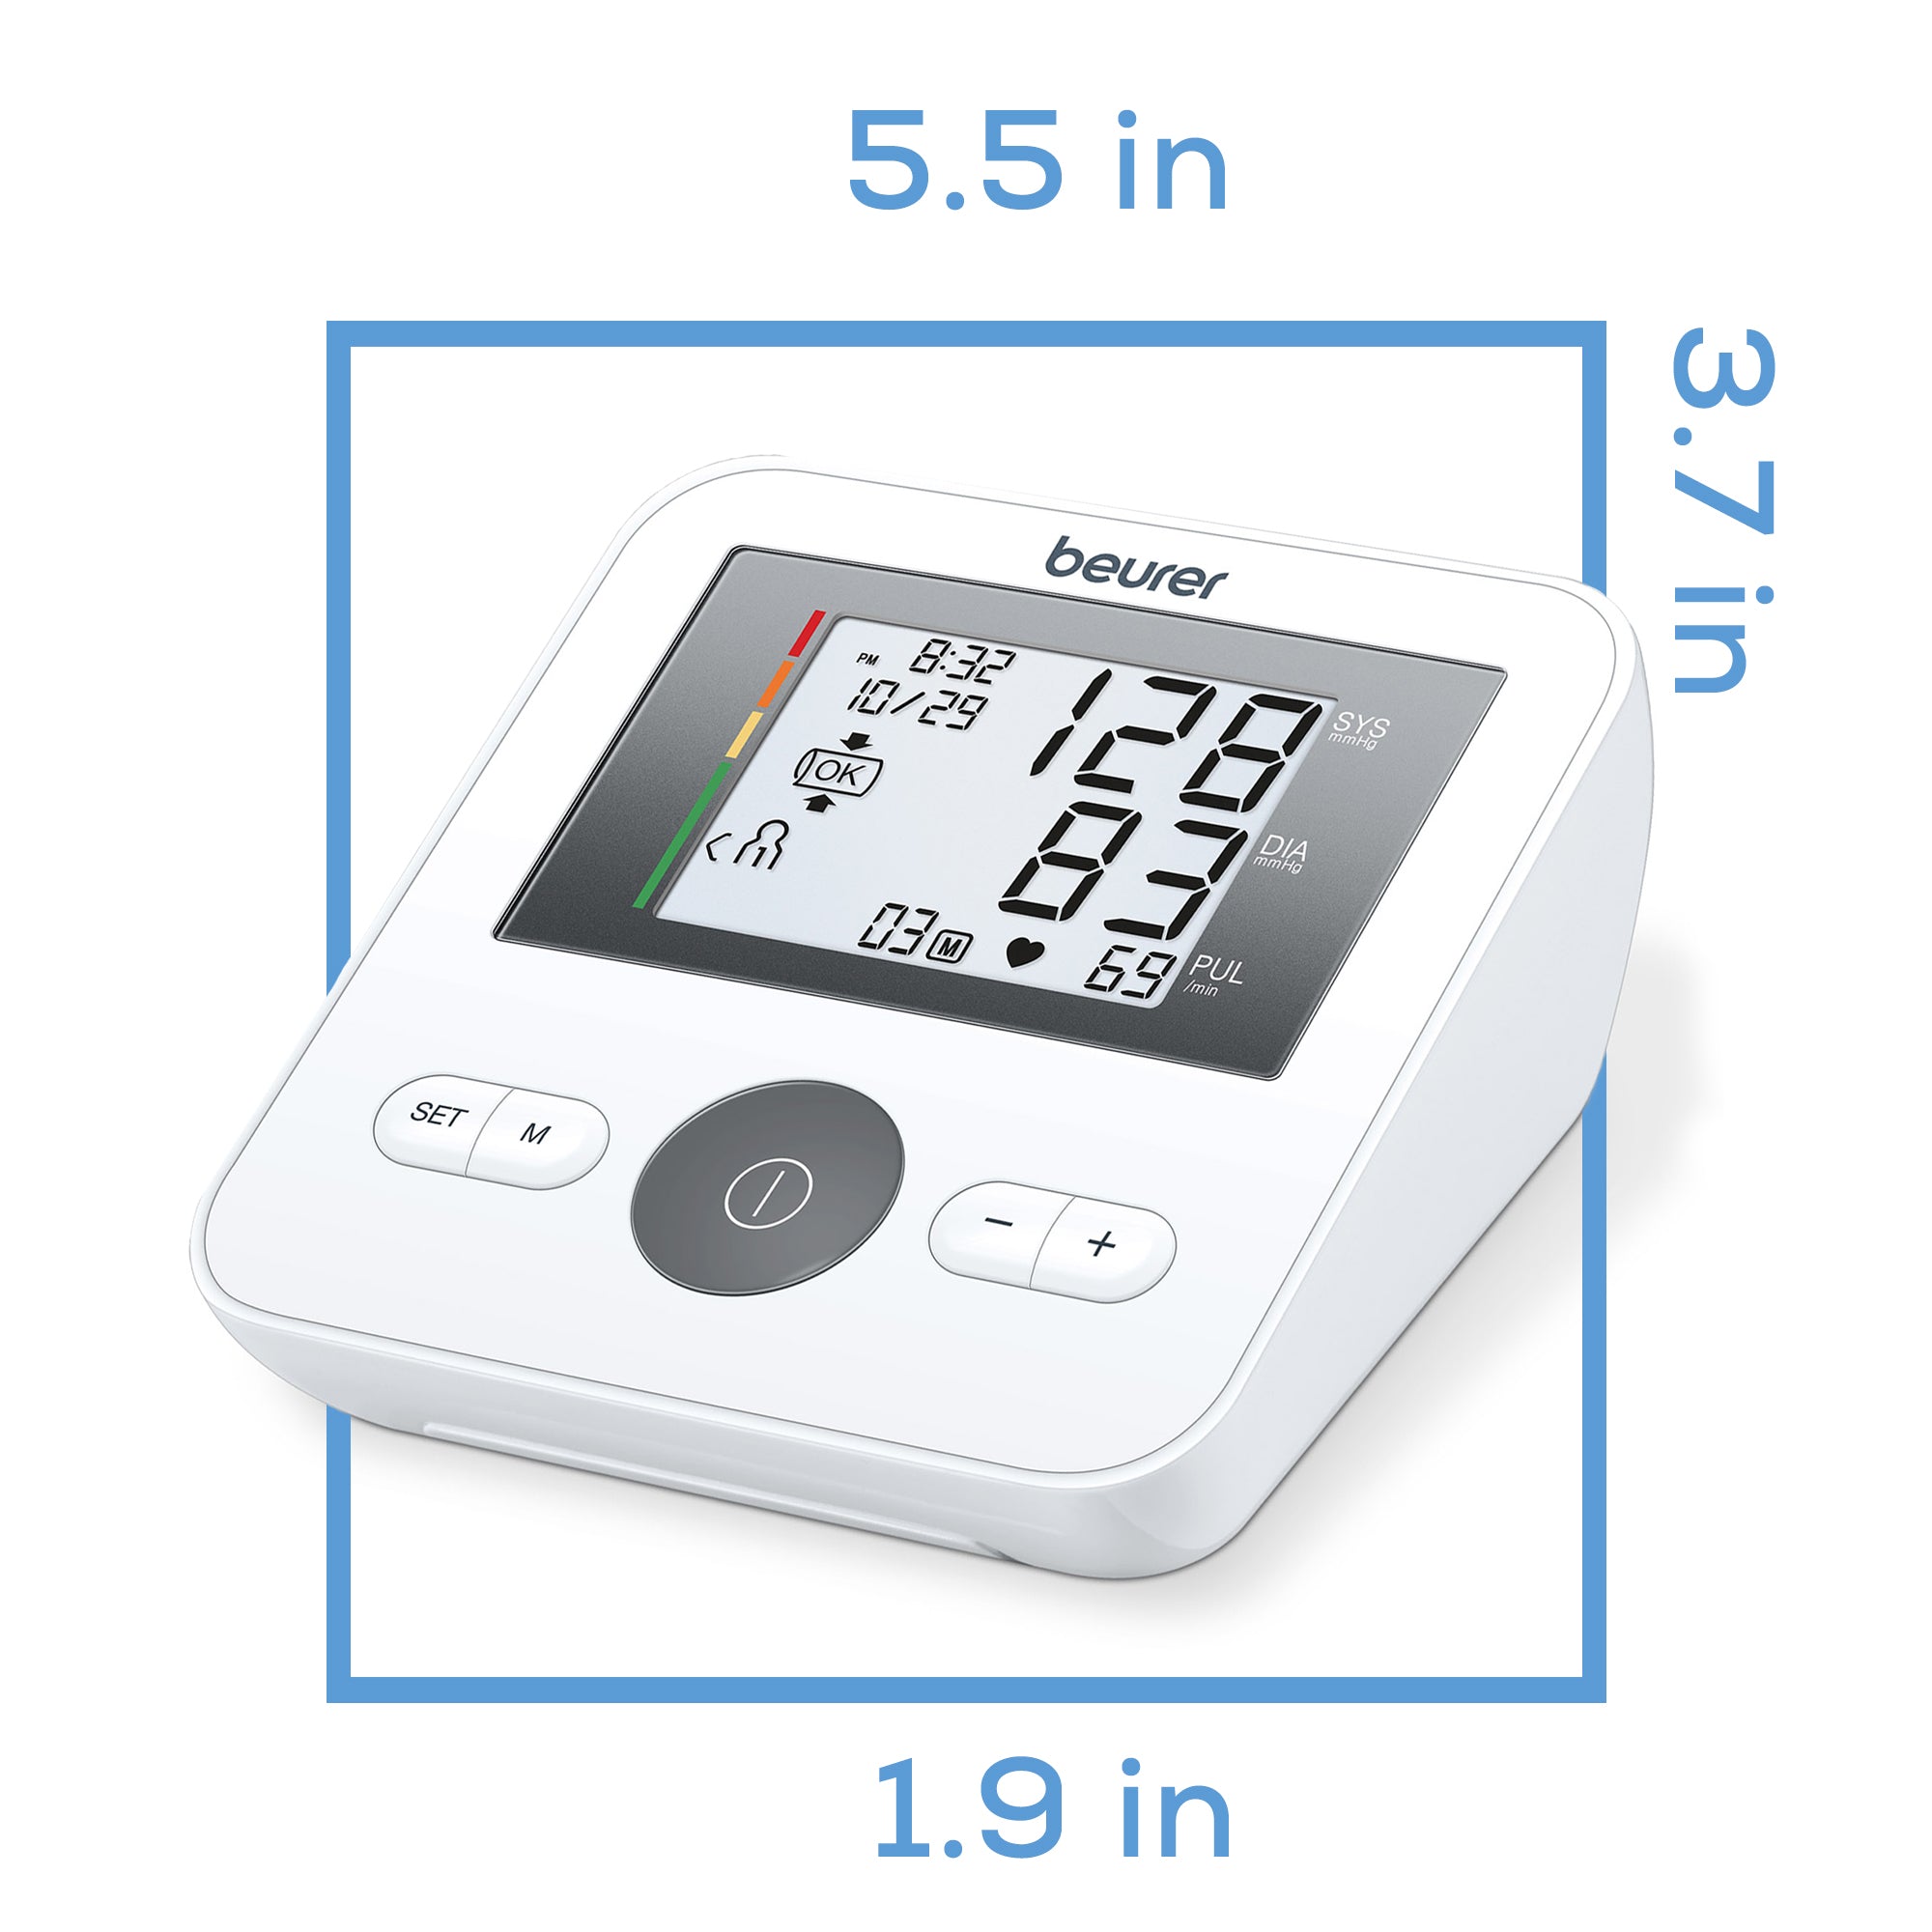 Beurer Smart Upper Arm Blood Pressure Monitor, BM54, Beurer North America